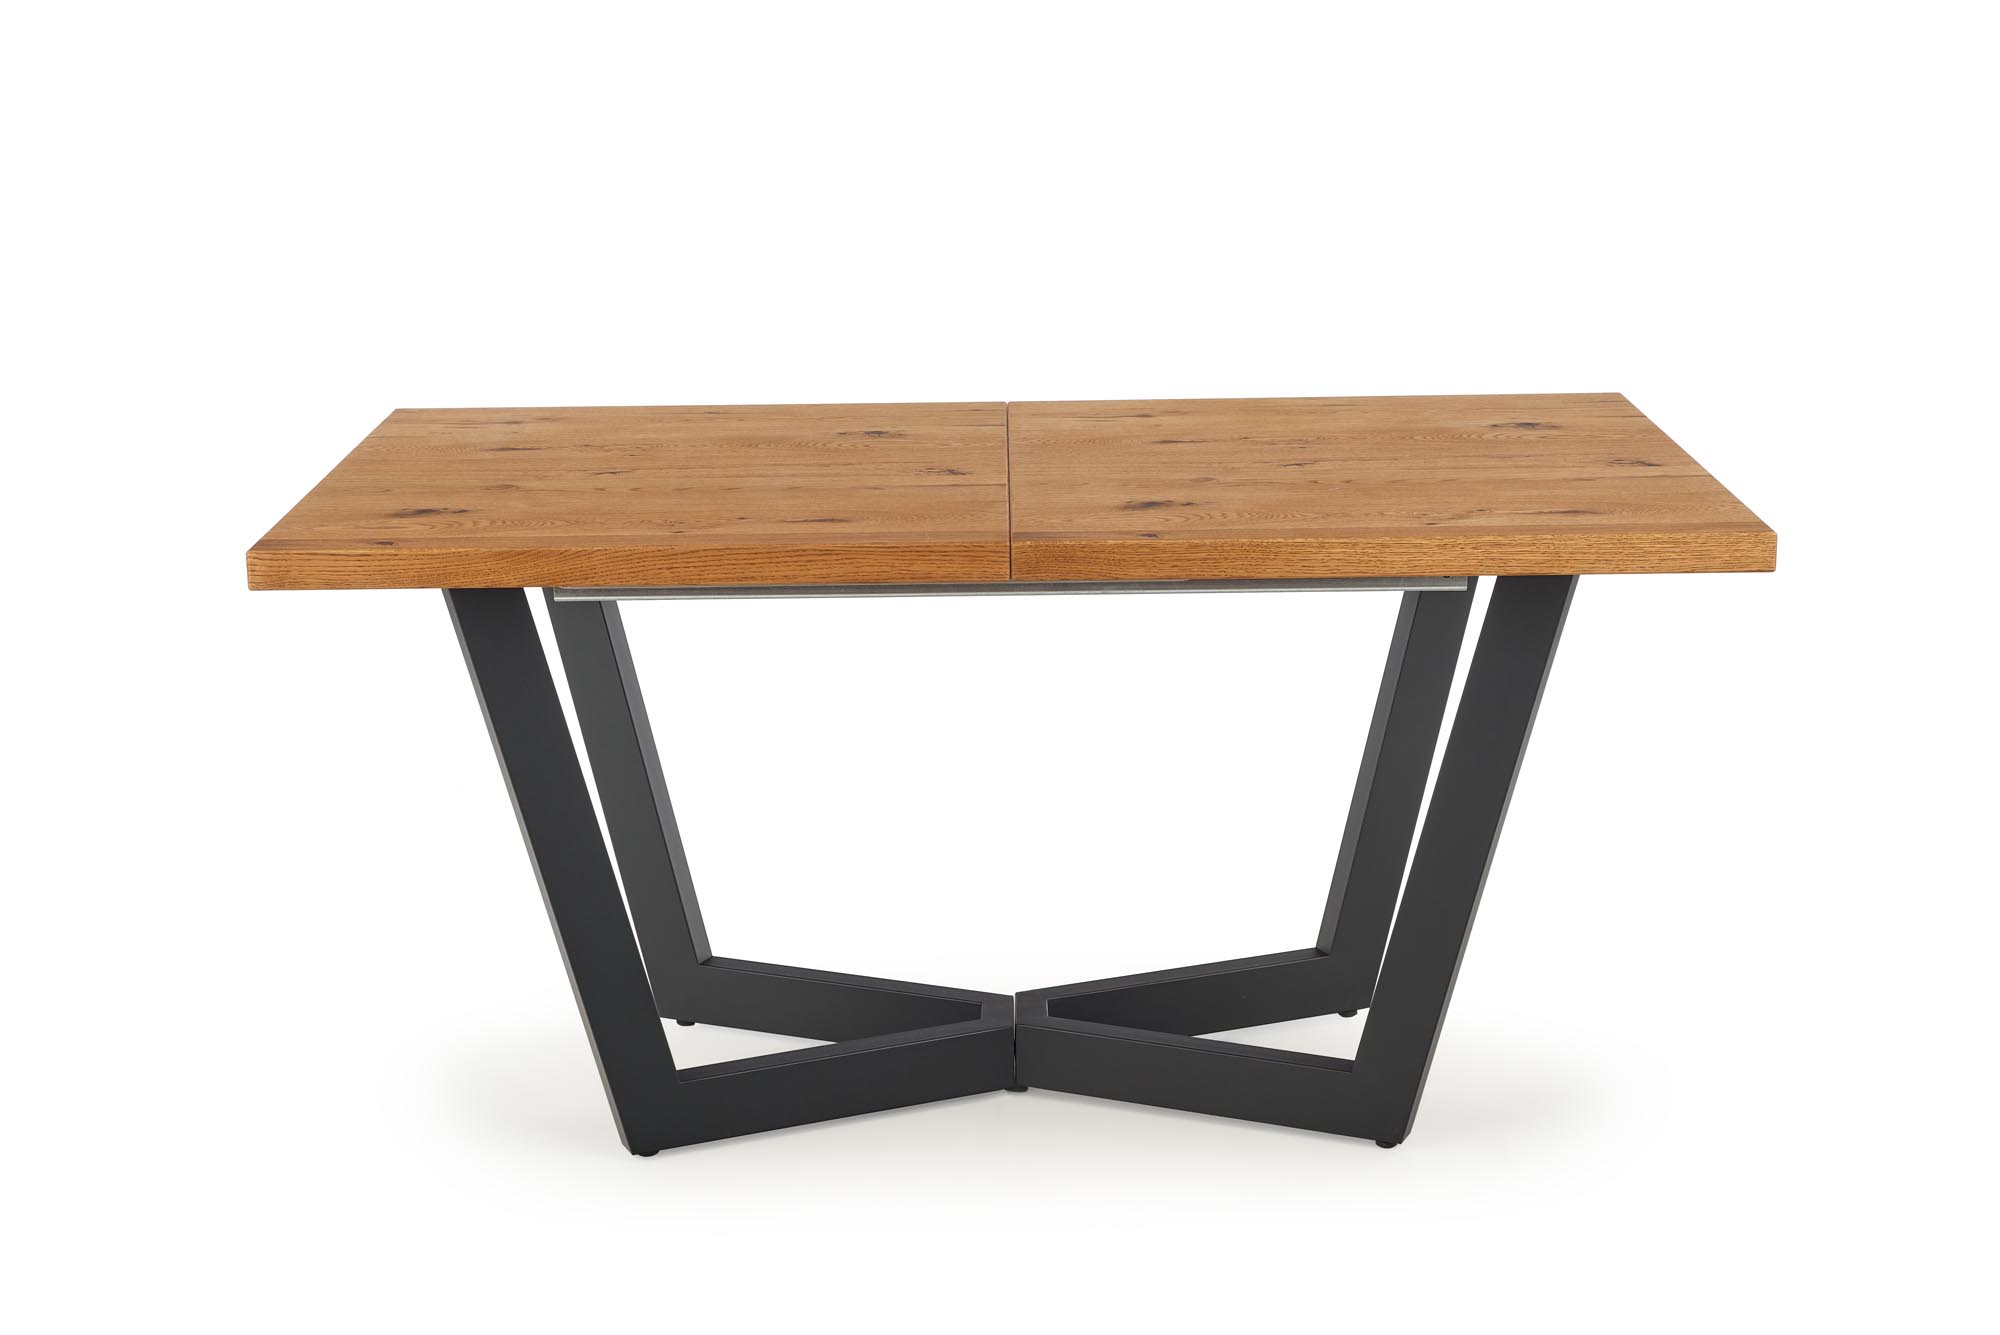 MASSIVE kanapéasztal - világos tölgy/fekete massive stůl rozkladany - Světlý dub/Fekete